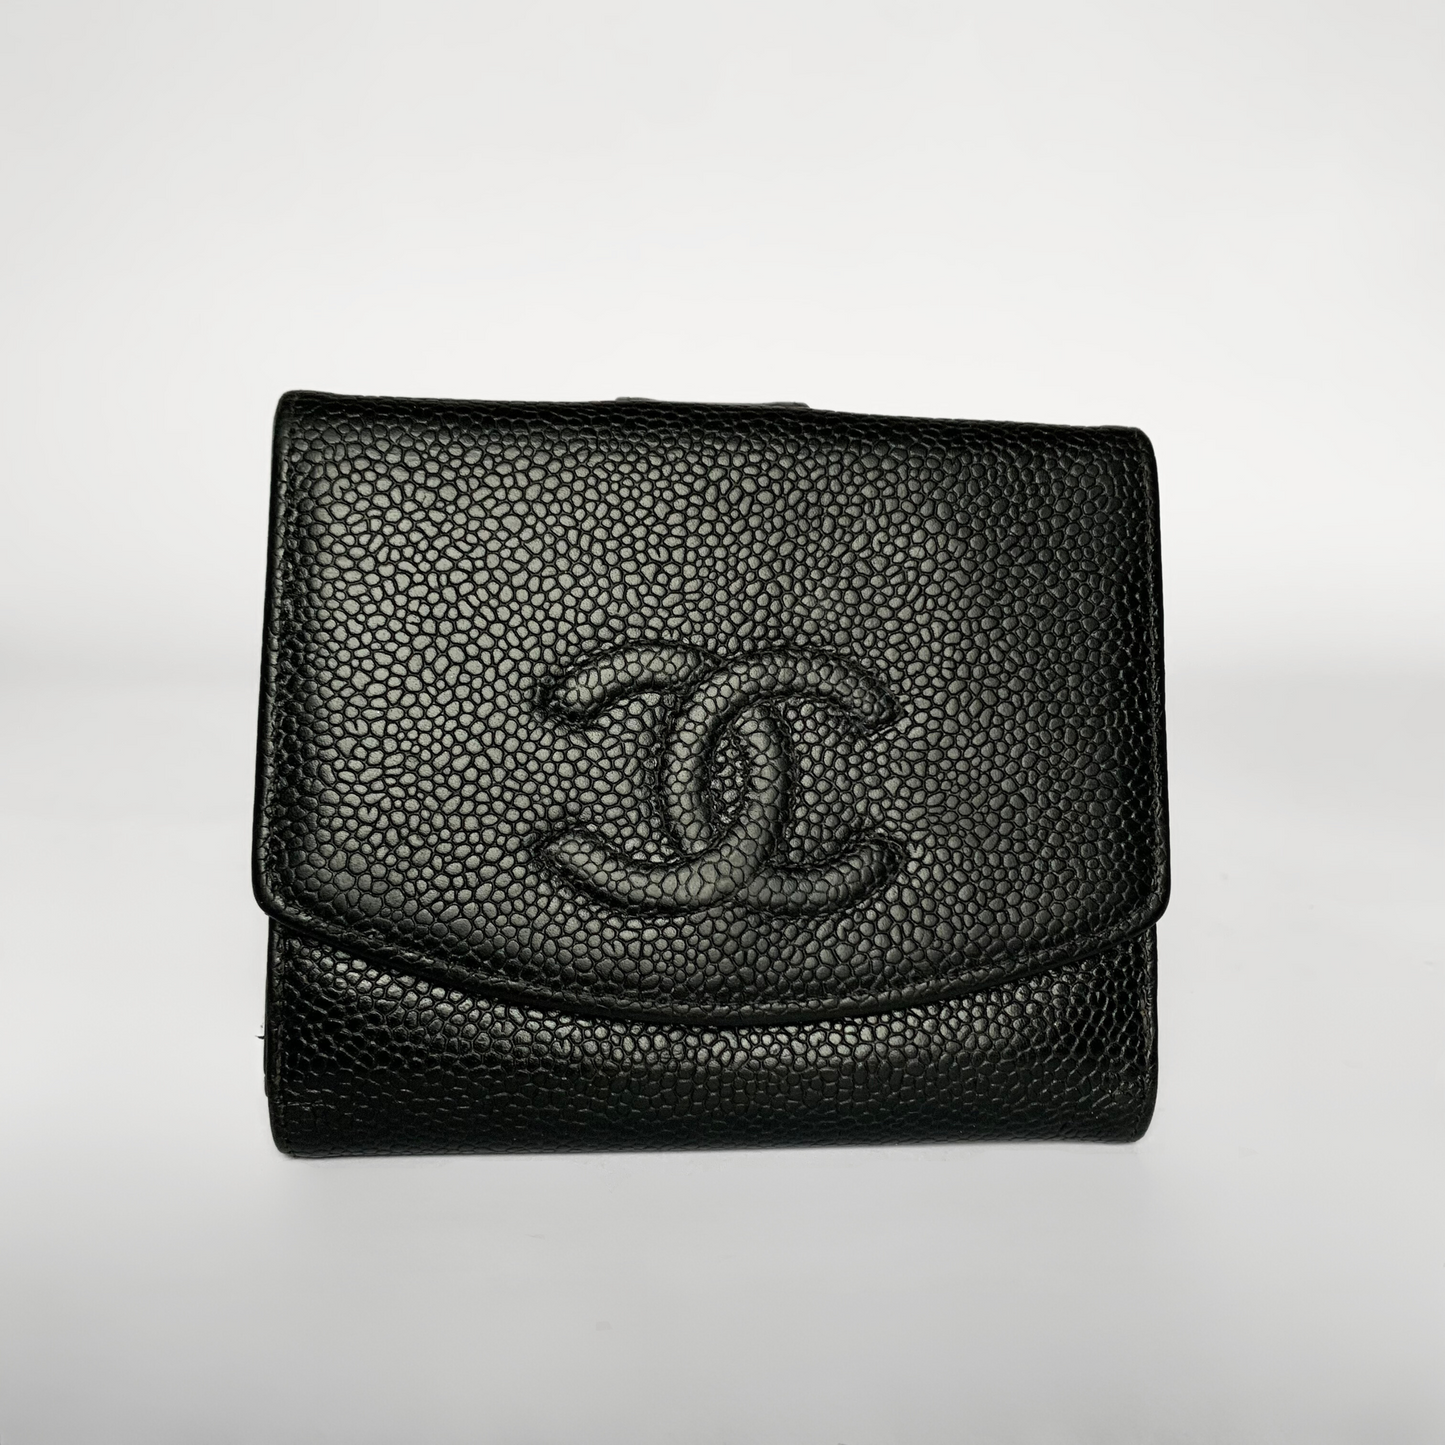 Chanel Chanel Cartera CC Pequeña Piel Caviar - Carteras - Etoile Luxury Vintage